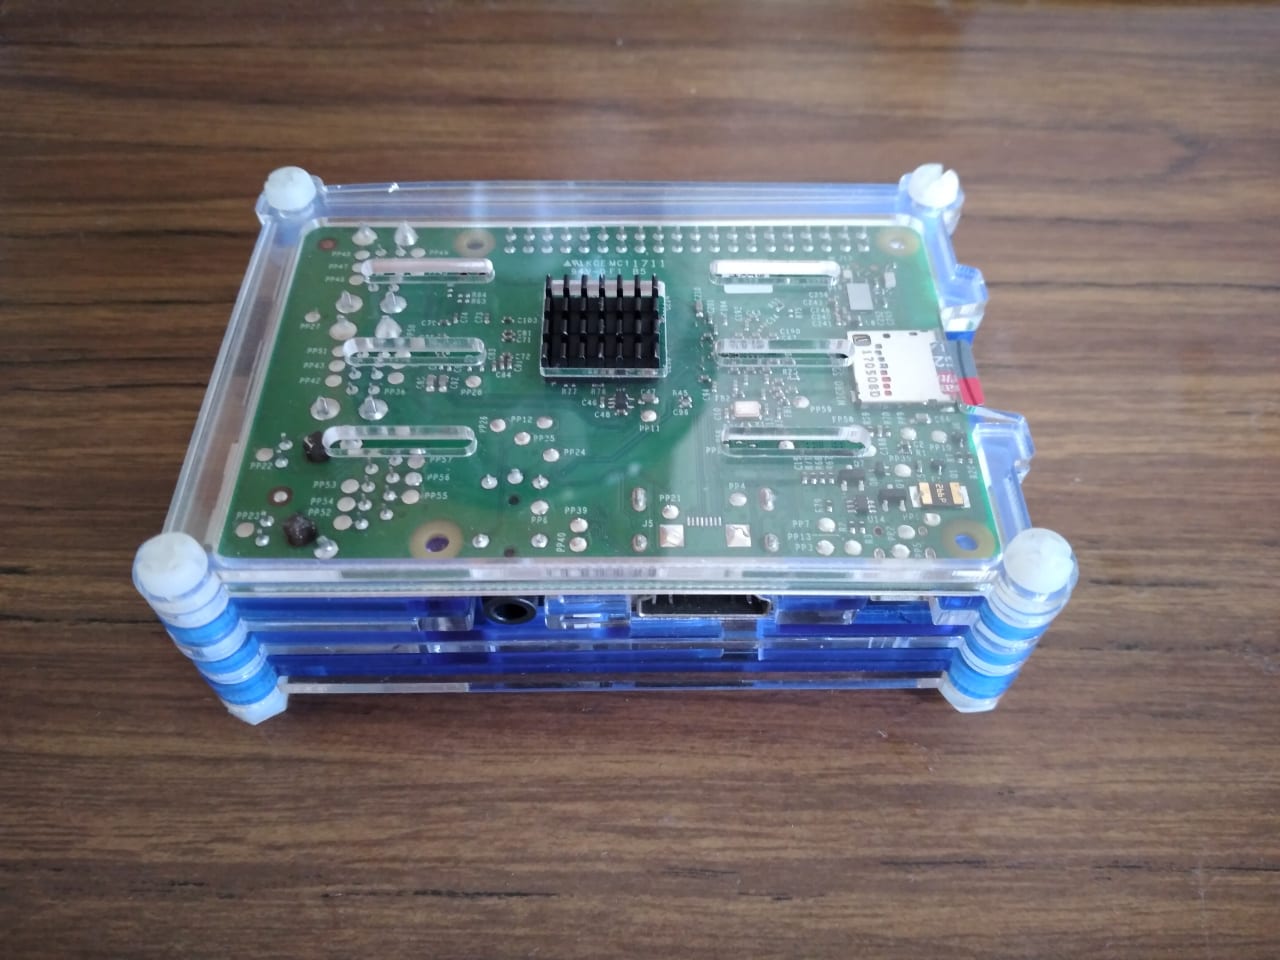 A Raspberry Pi single board computer